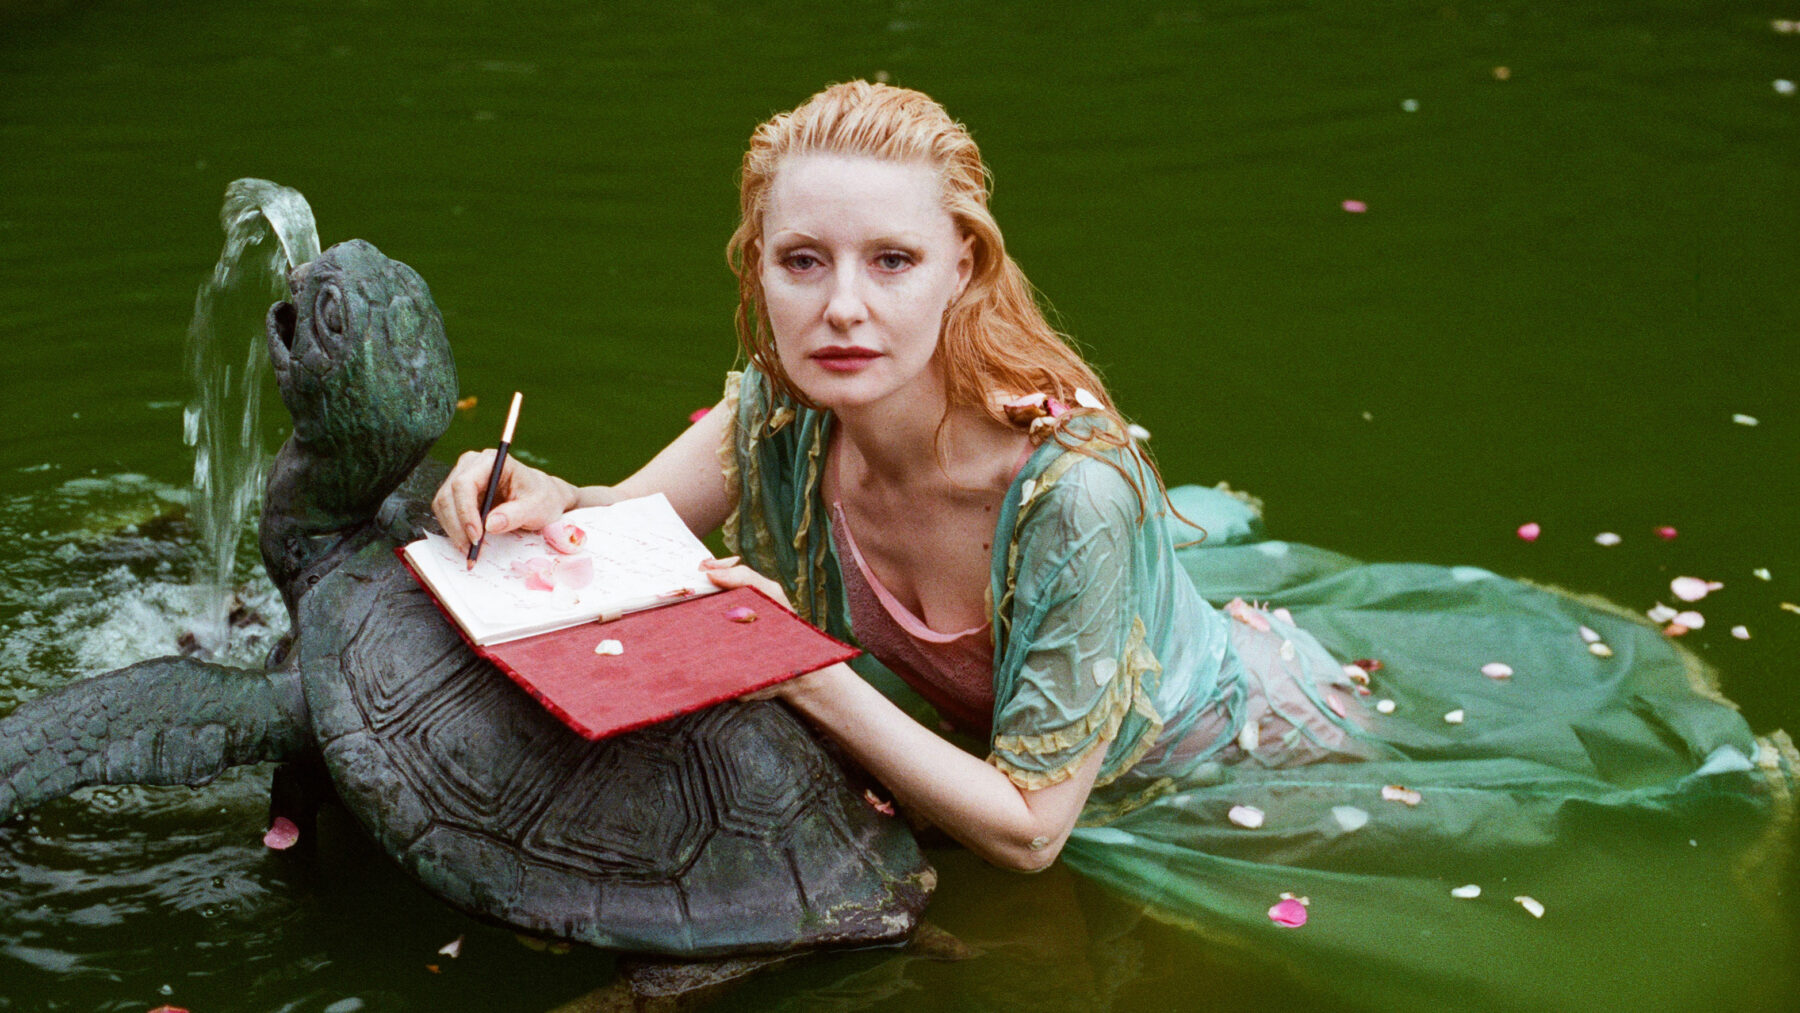 Kobieta w wodzie pisze w zeszycie opierając się o fontannę w kształcie żółwia